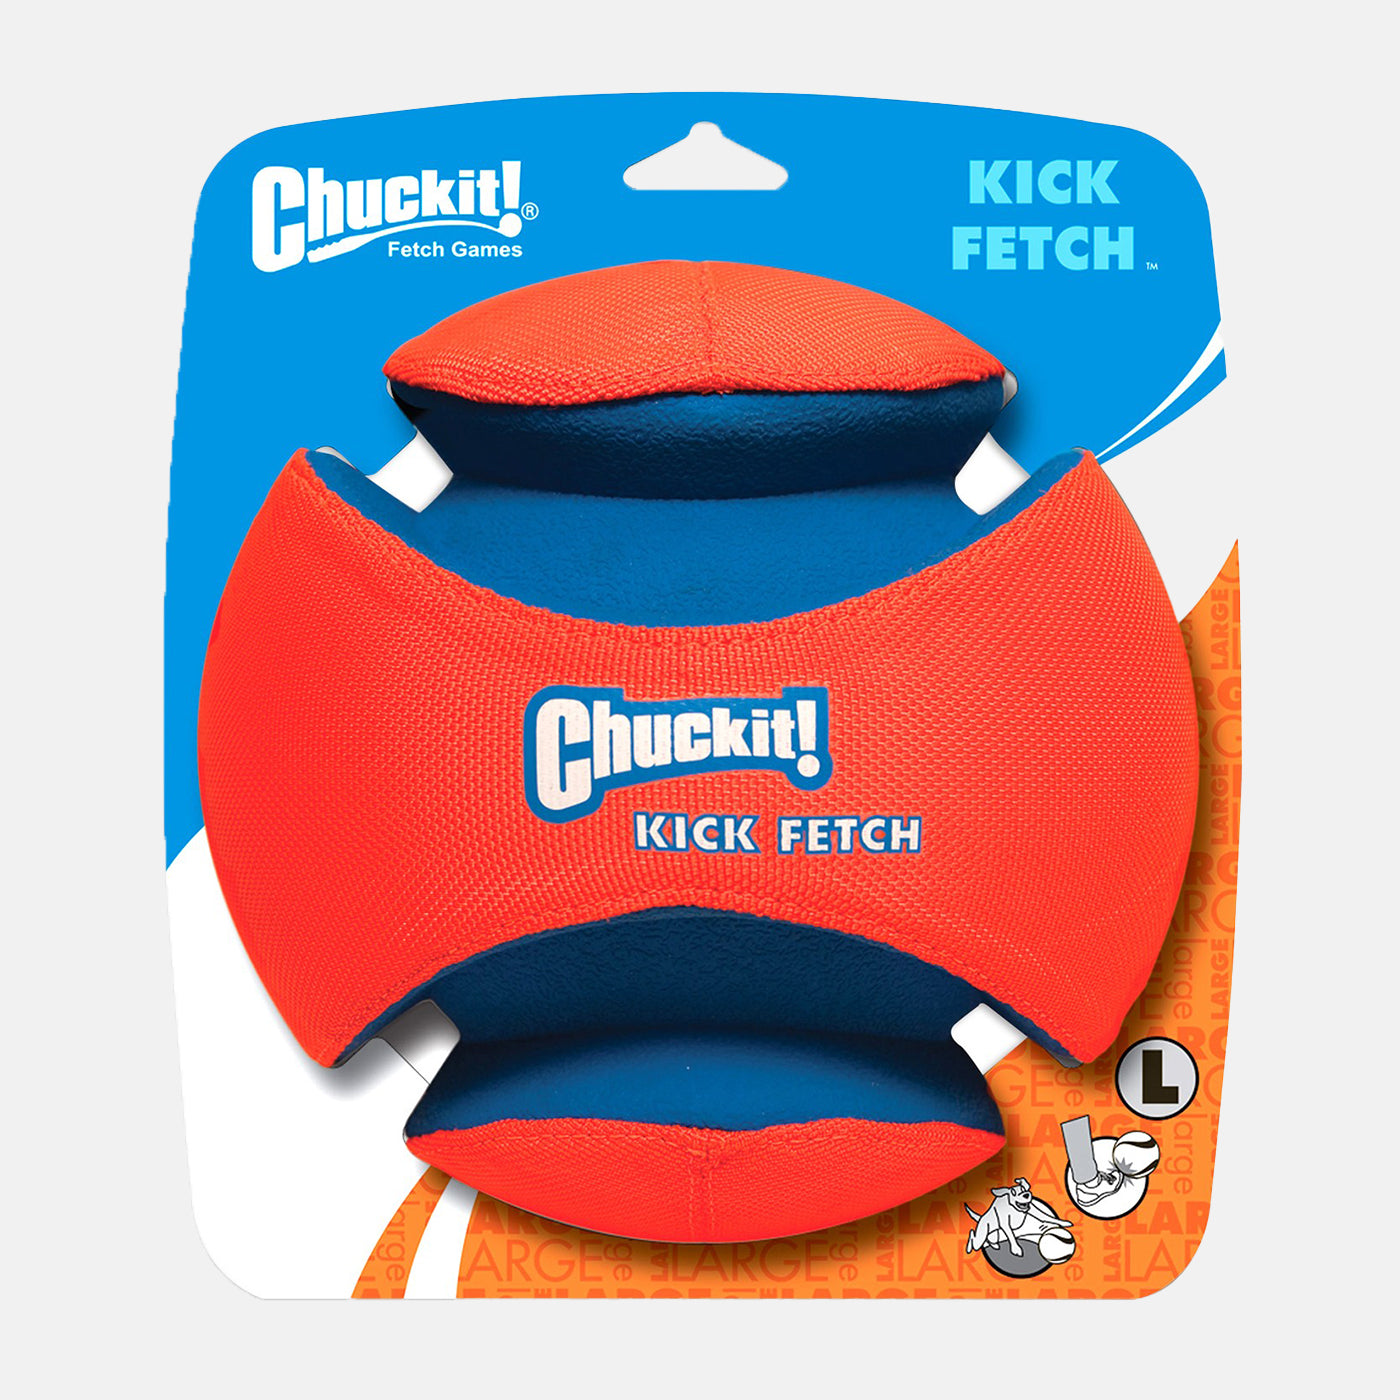 Chuckit Kick Fetch Ball